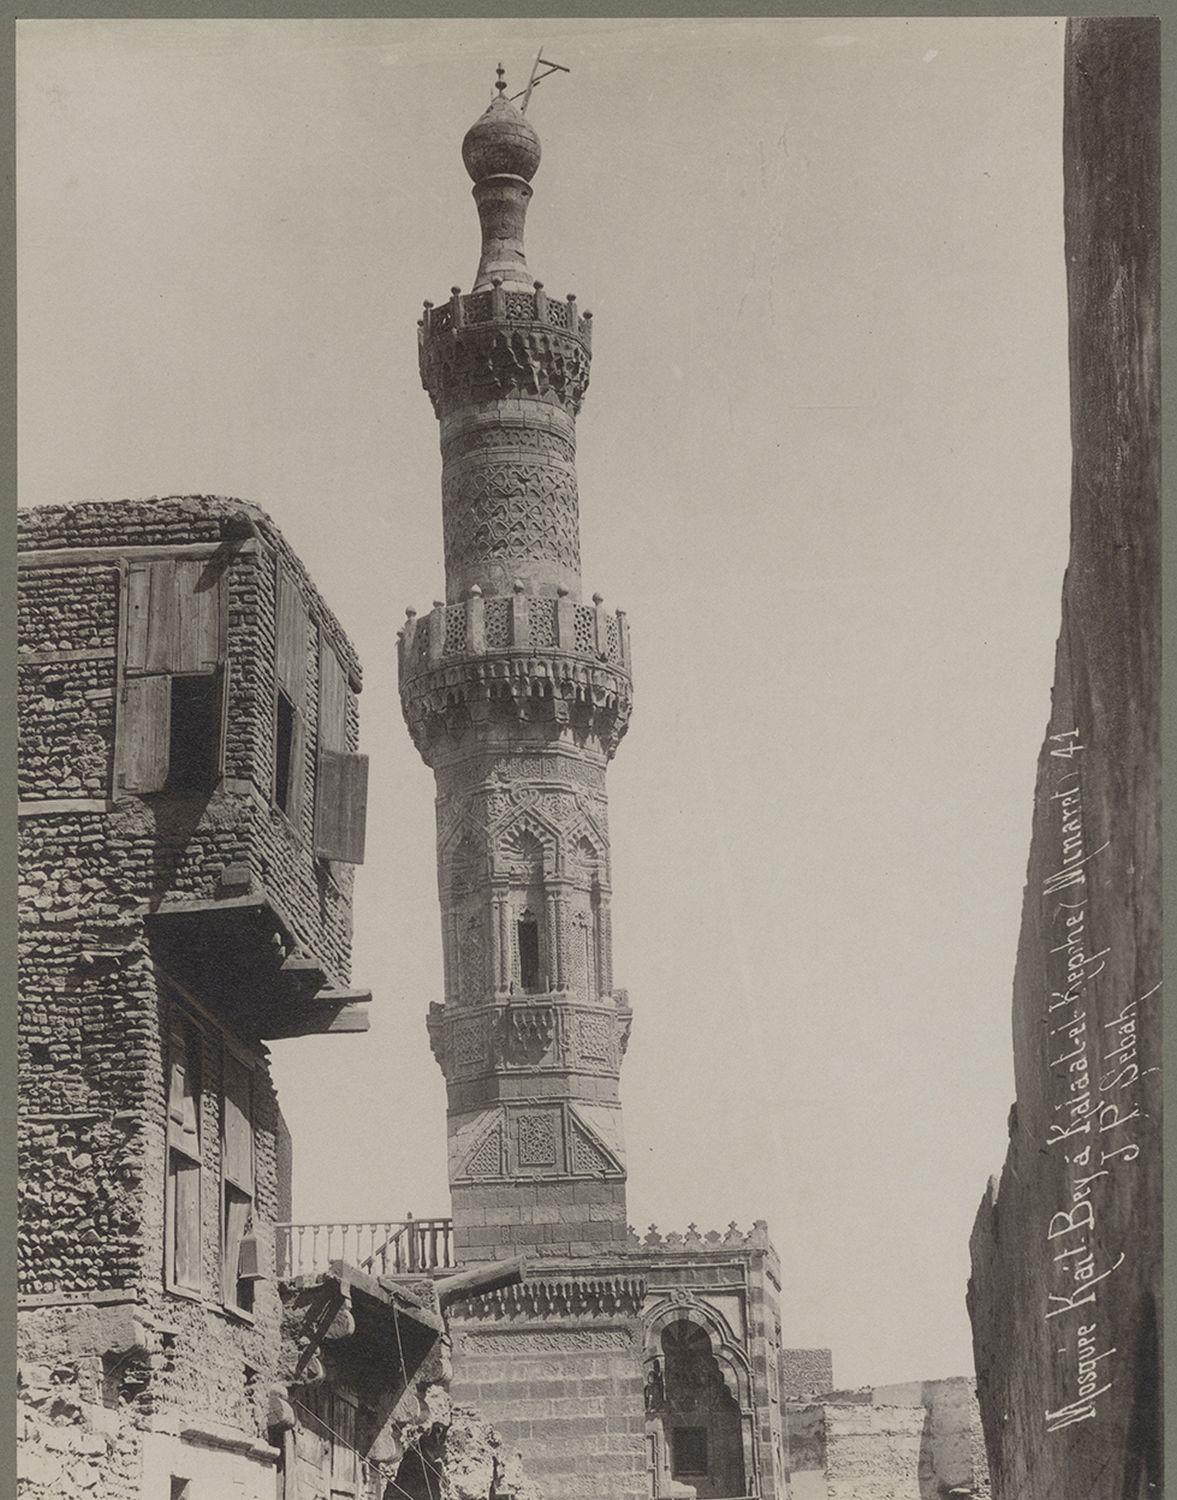 View of minaret.